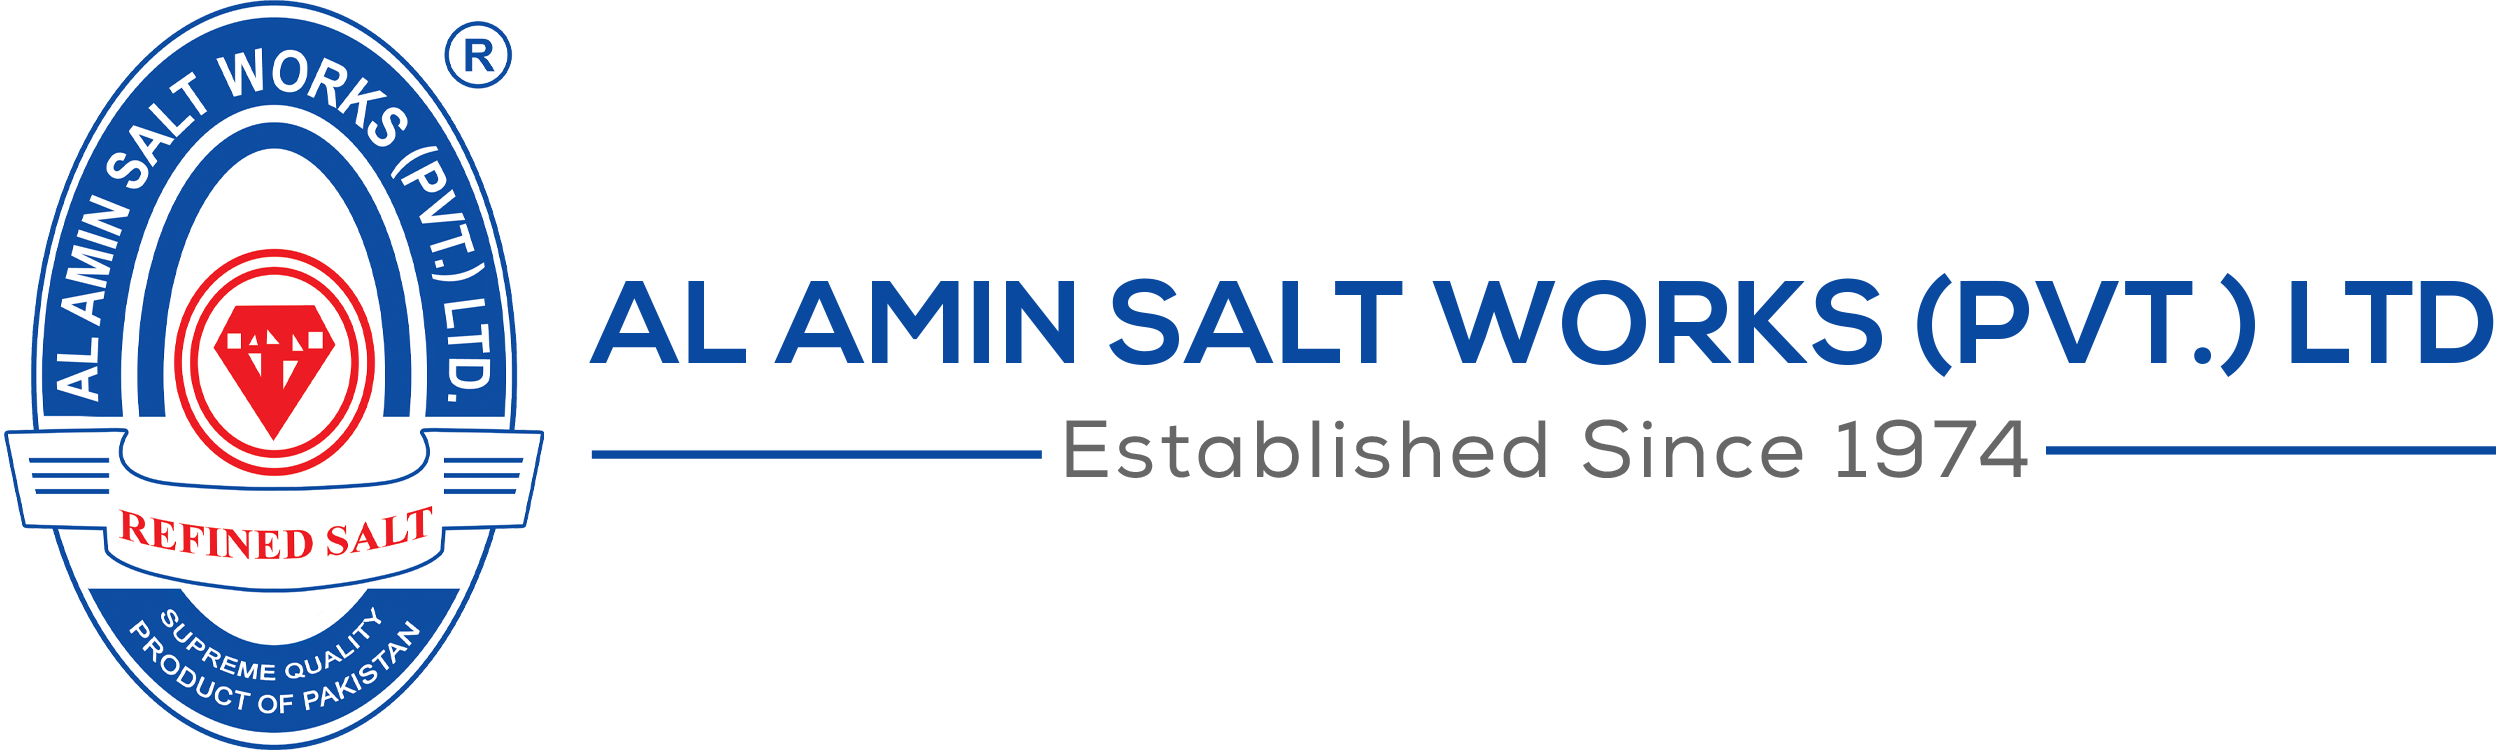 Al-Amin-Salt-Works-Pvt-Ltd-Logo-HD